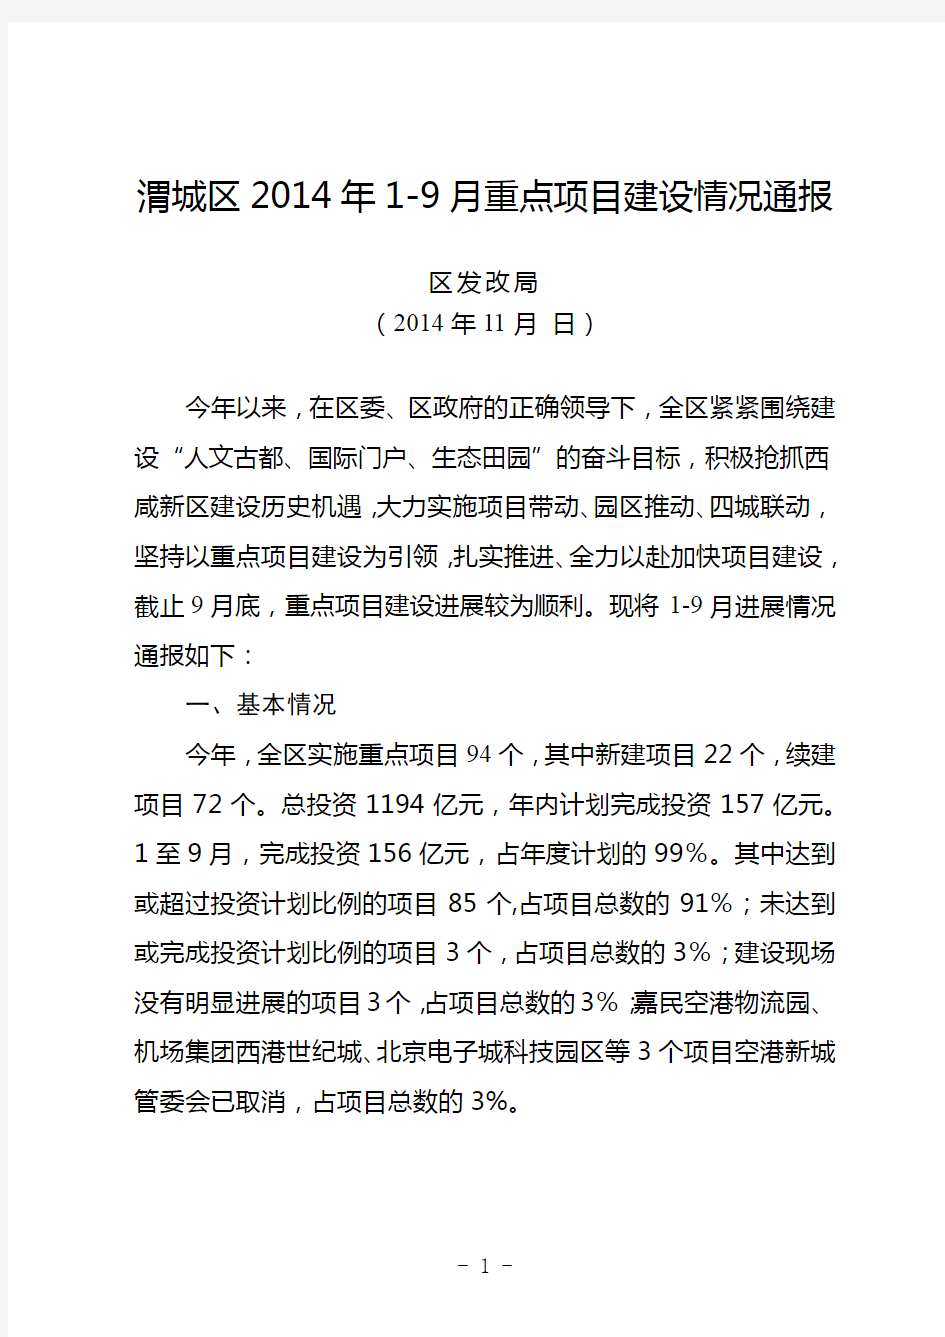 渭城区2014年1-9月重点项目建设情况通报【模板】